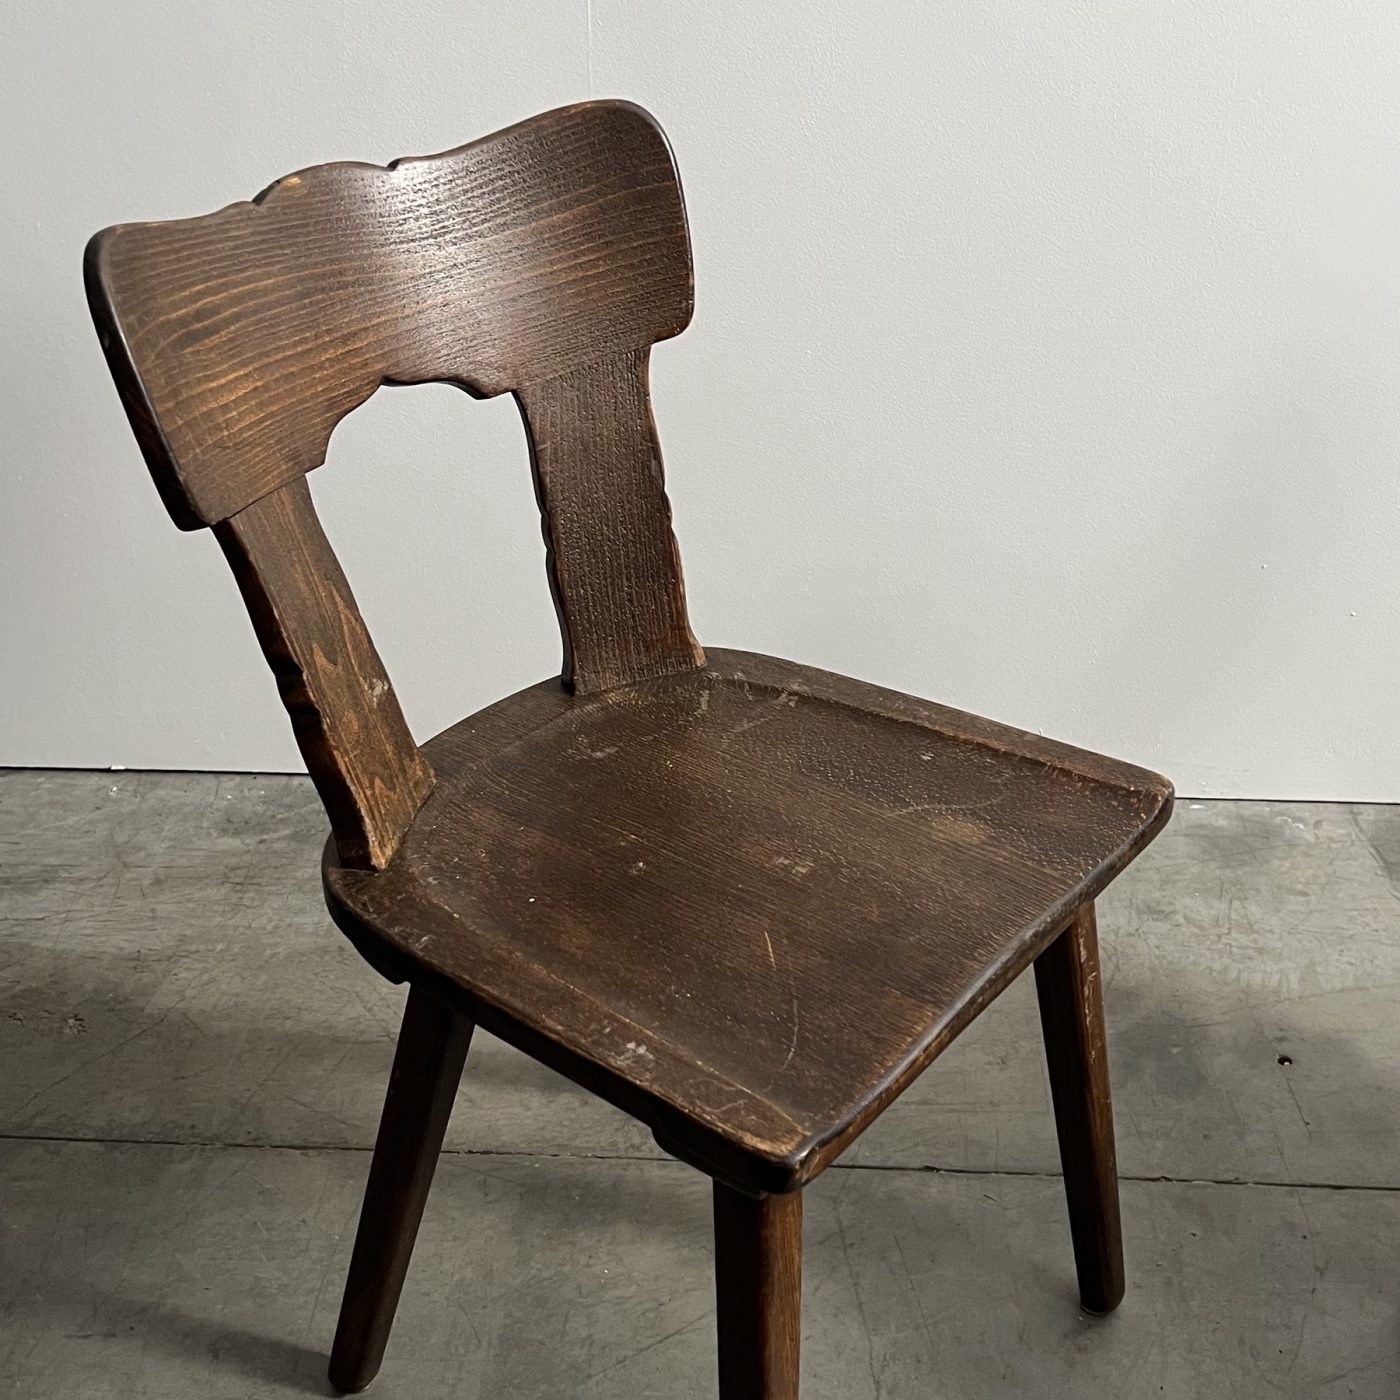 objet-vagabond-bistrot-chairs0004